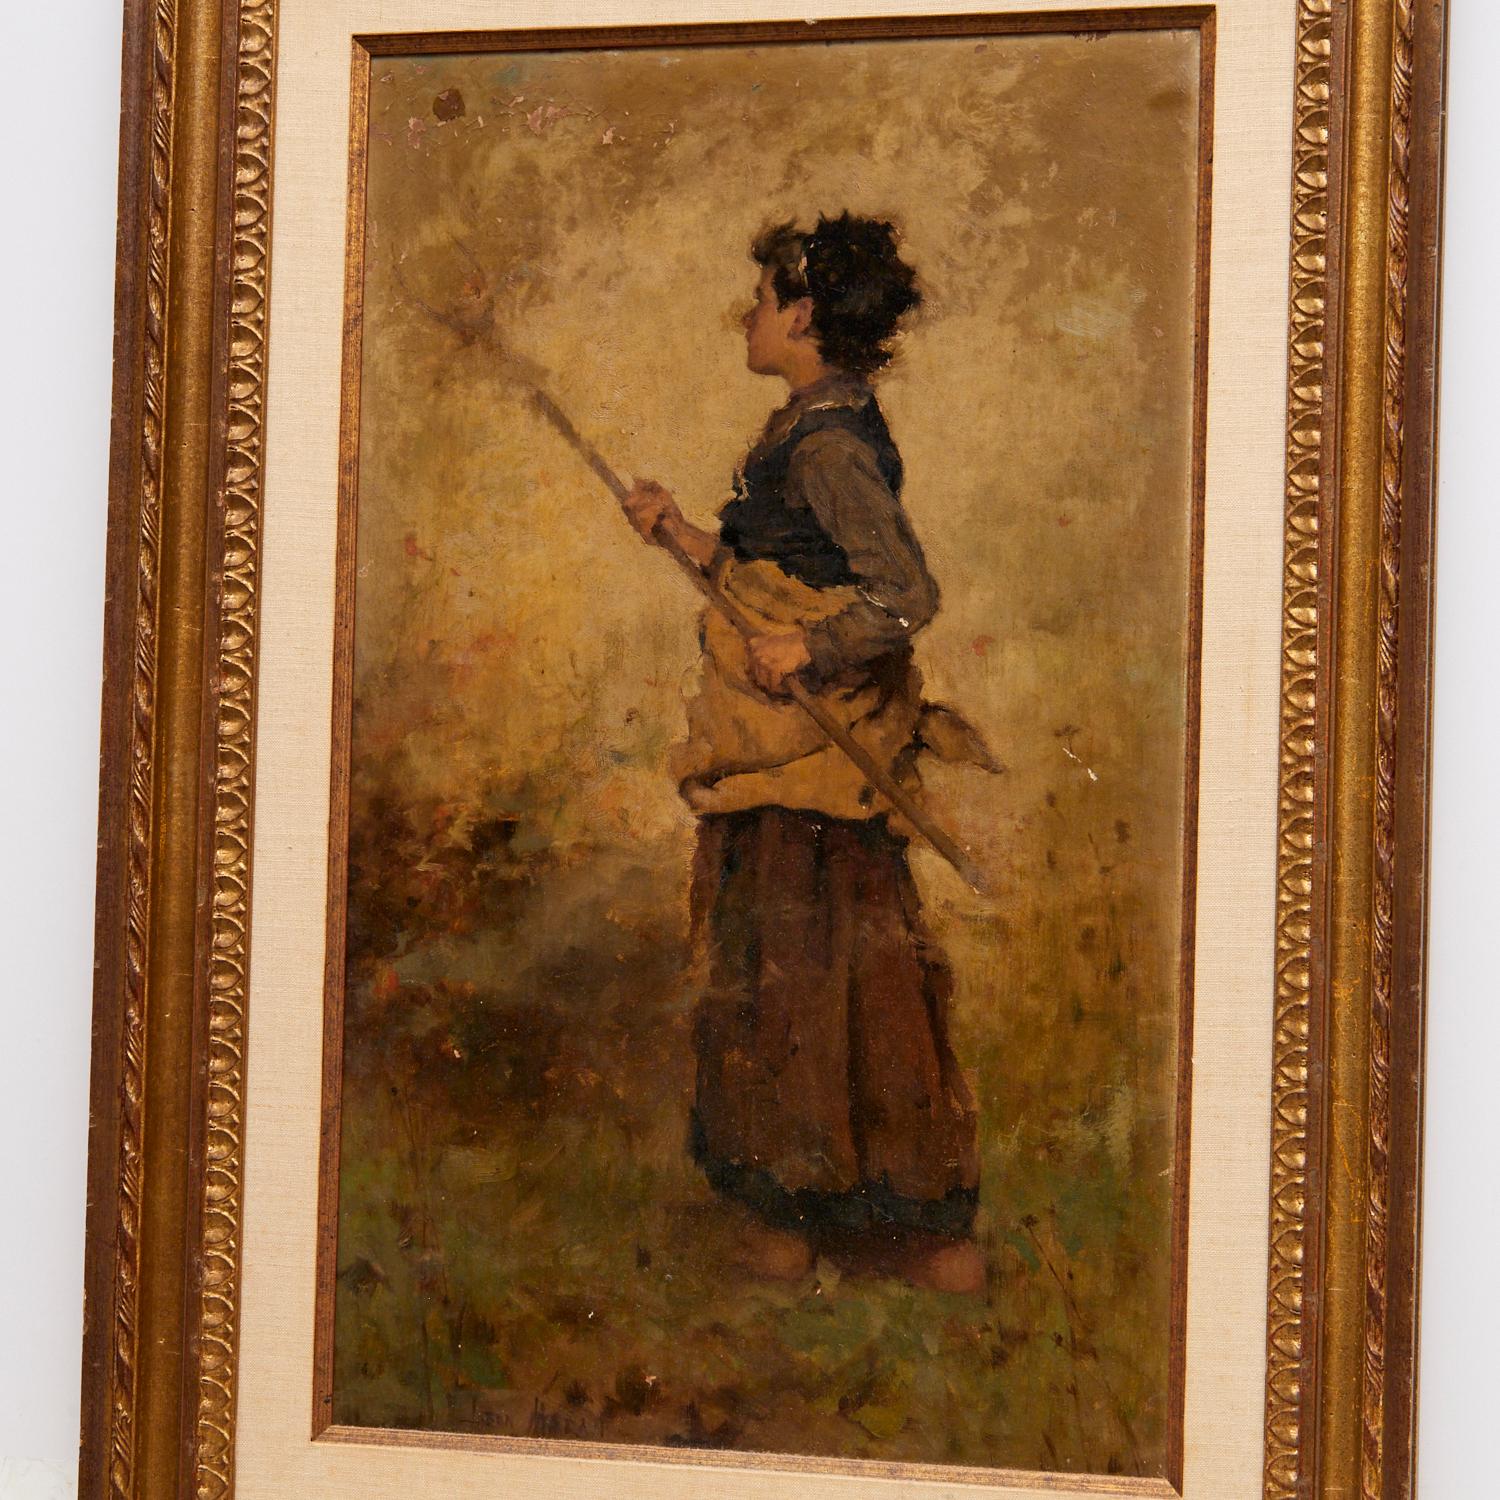 John Leon Moran (Amerikaner, 1864-1941), Frau beim Heumachen, Öl auf Karton, signiert unten in der Mitte. Dies ist ein charmantes und stimmungsvolles Gemälde einer vergangenen Epoche. Die barfuß und in Arbeitskleidung gekleidete Frau hält eine